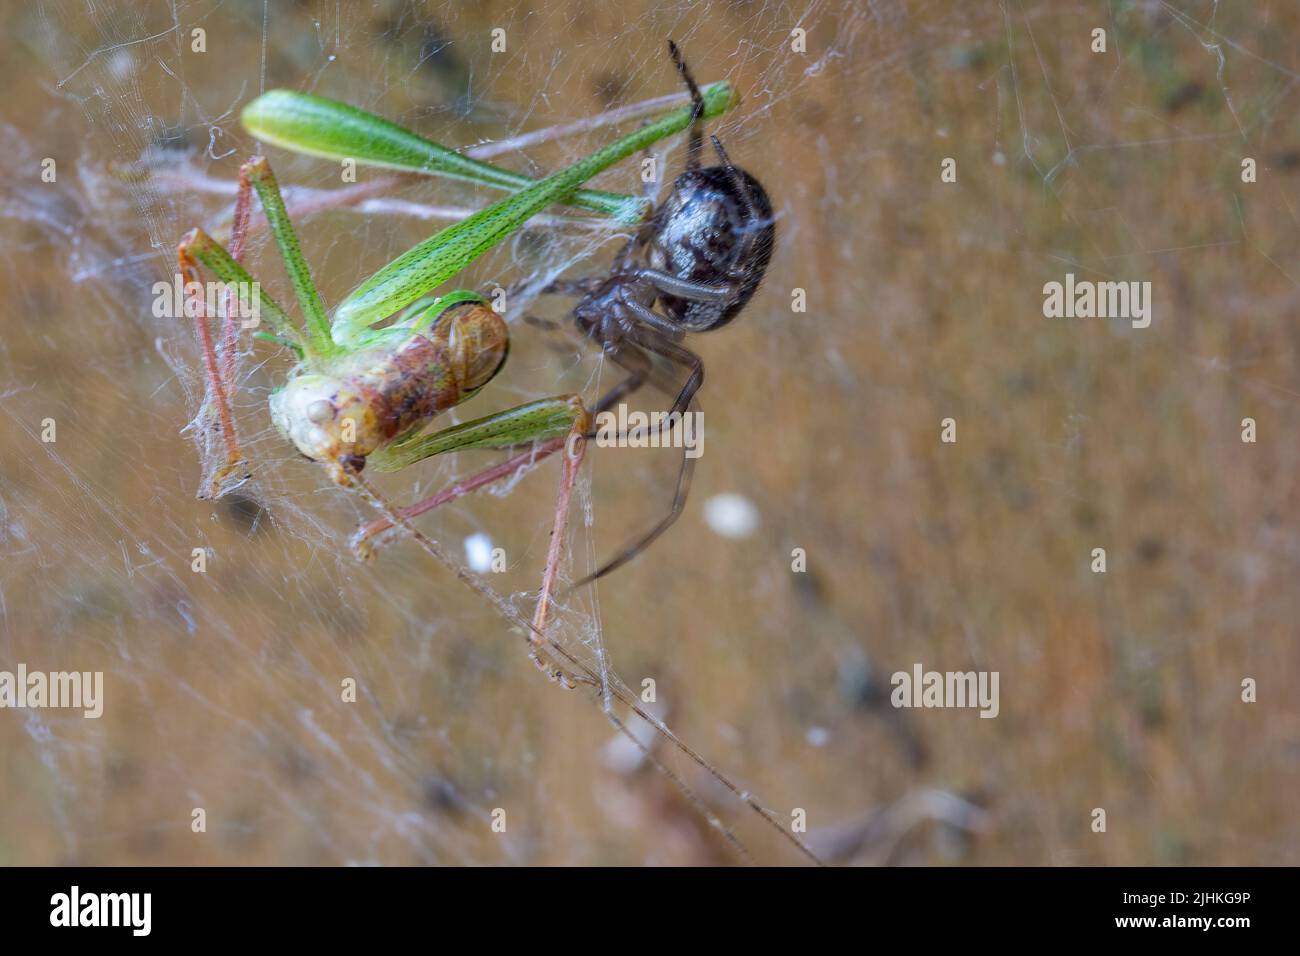 Grasshoper verde en tela de araña en la puerta de jardín moteado cricket arbusto (leptophyes punctatissima) puntos negros minúsculos que cubren el cuerpo, tiene largas piernas espinosas Foto de stock